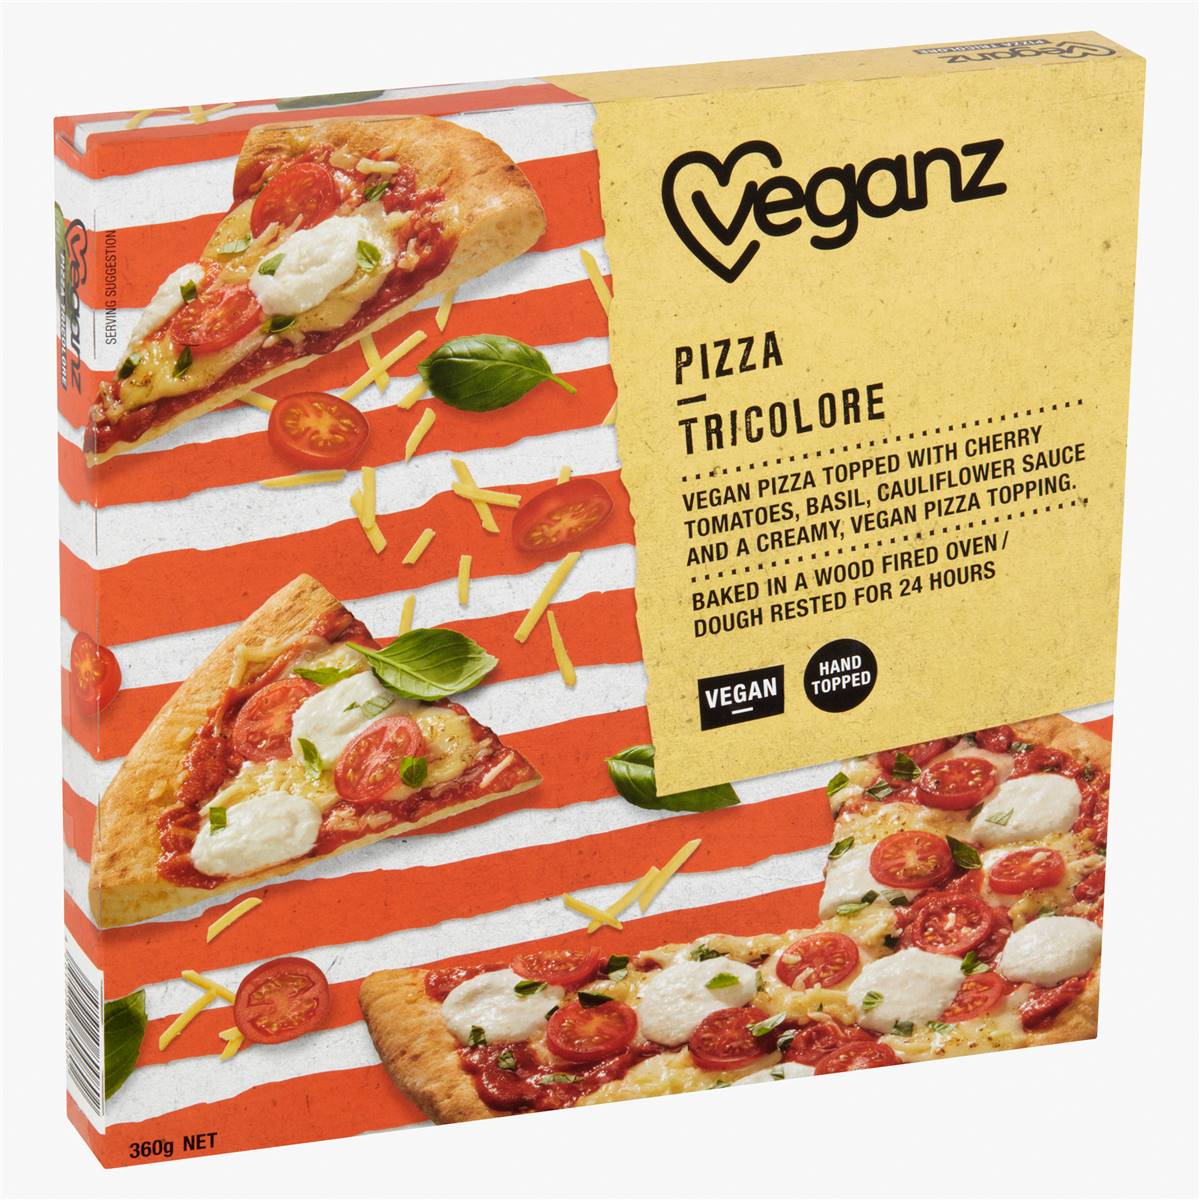 Calories in Veganz Tricolore Pizza